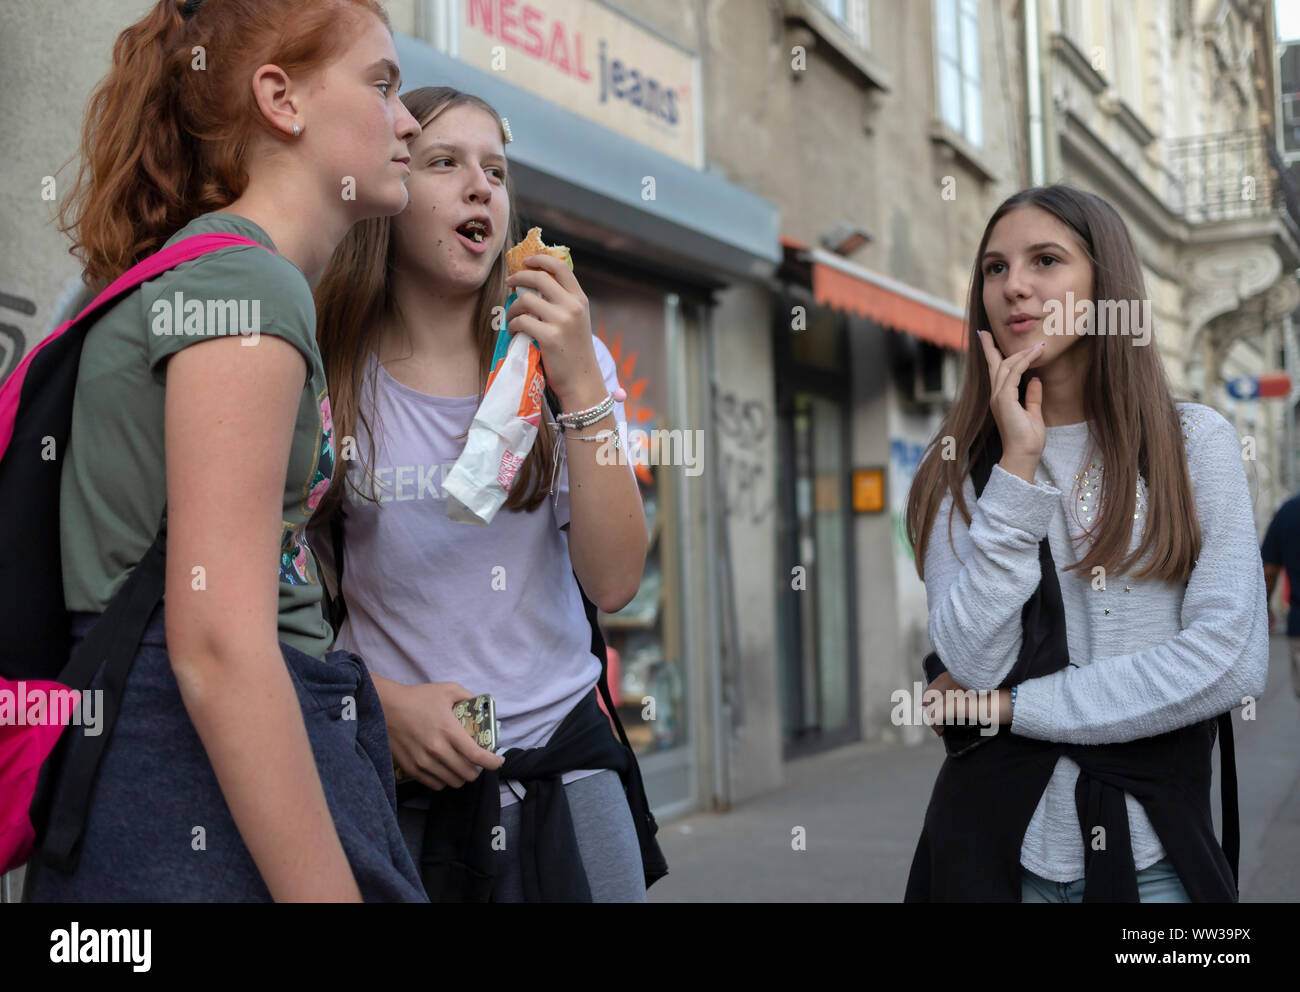 A Belgrado, in Serbia, 10 Settembre 2019: scena urbana con tre ragazze adolescenti in piedi sulla strada e in chat Foto Stock